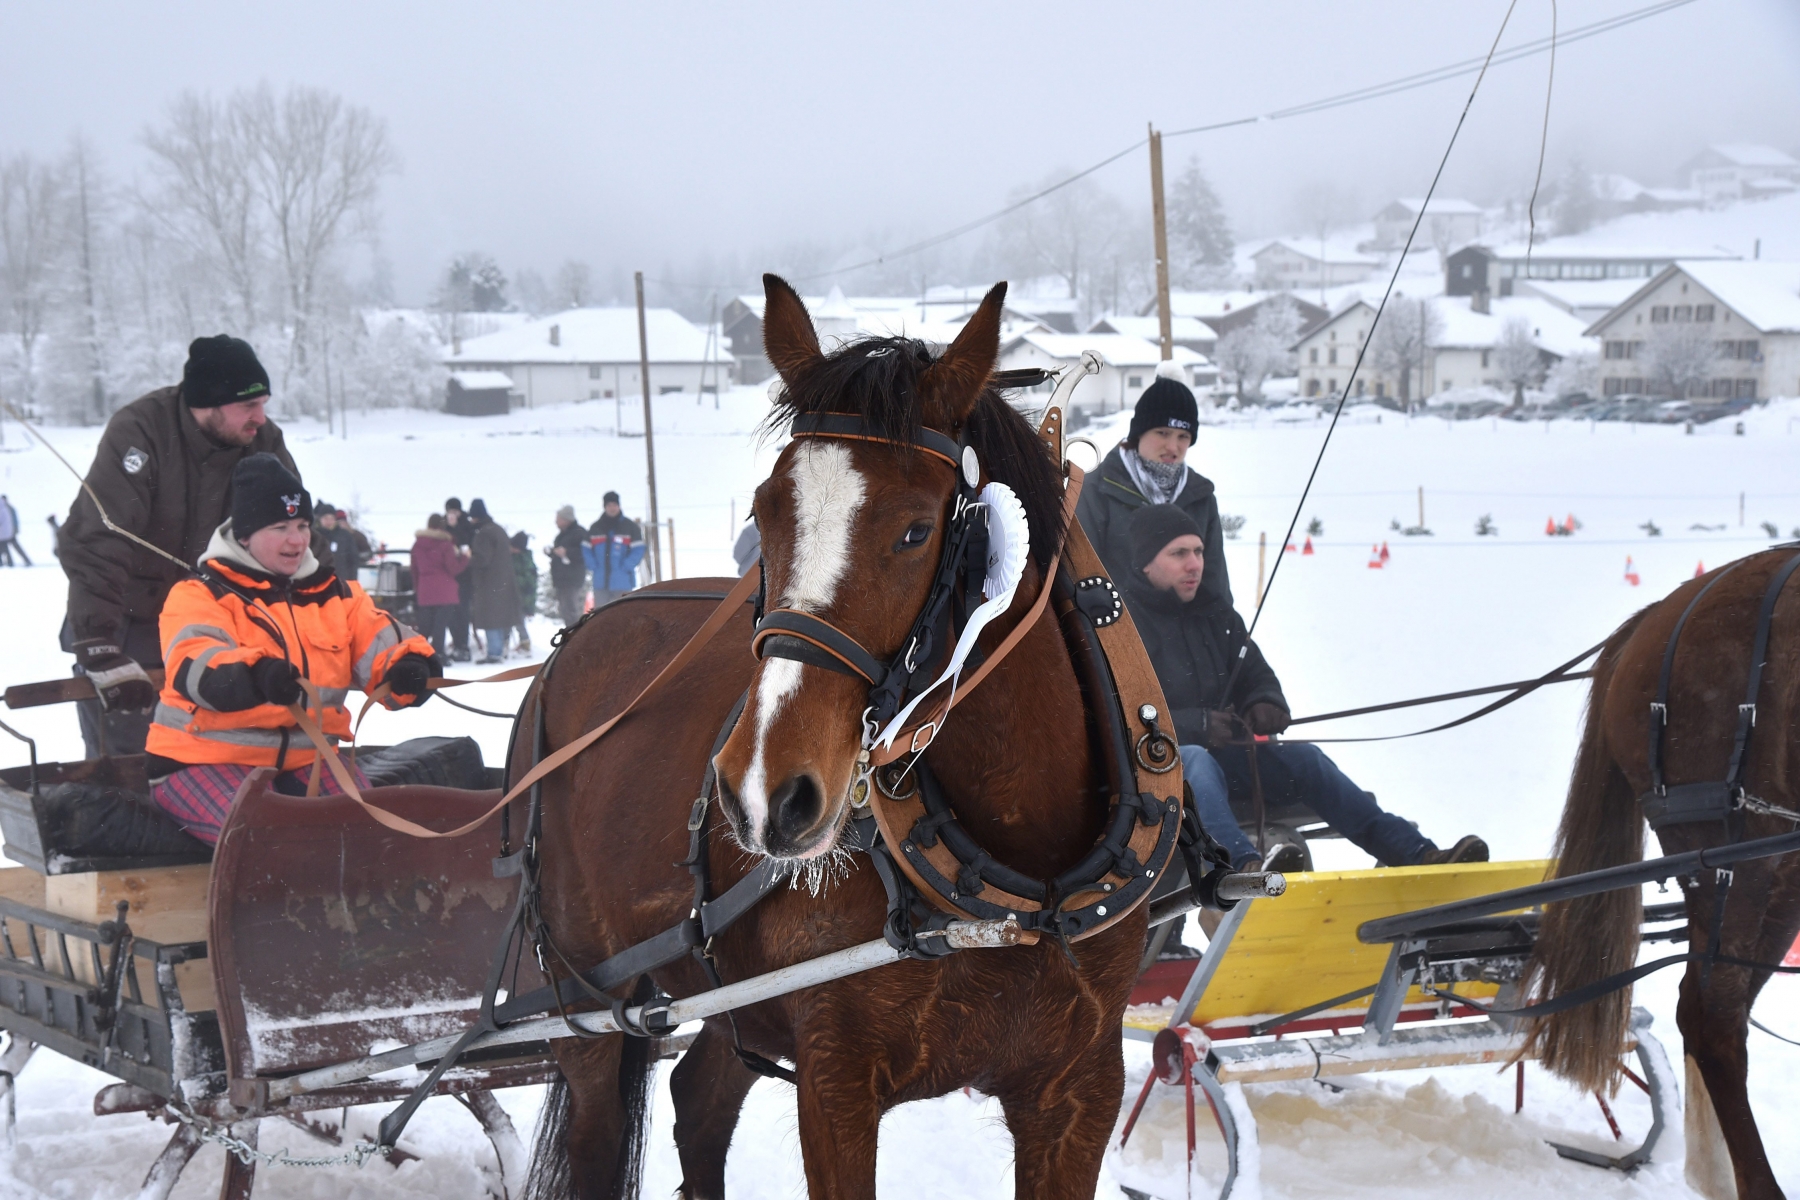 Journee equestre: courses d'attelages sur neige pour chevaux Franches-Montagnes

Muriaux 22 02 2015
Photo R Leuenberger MURIAUX